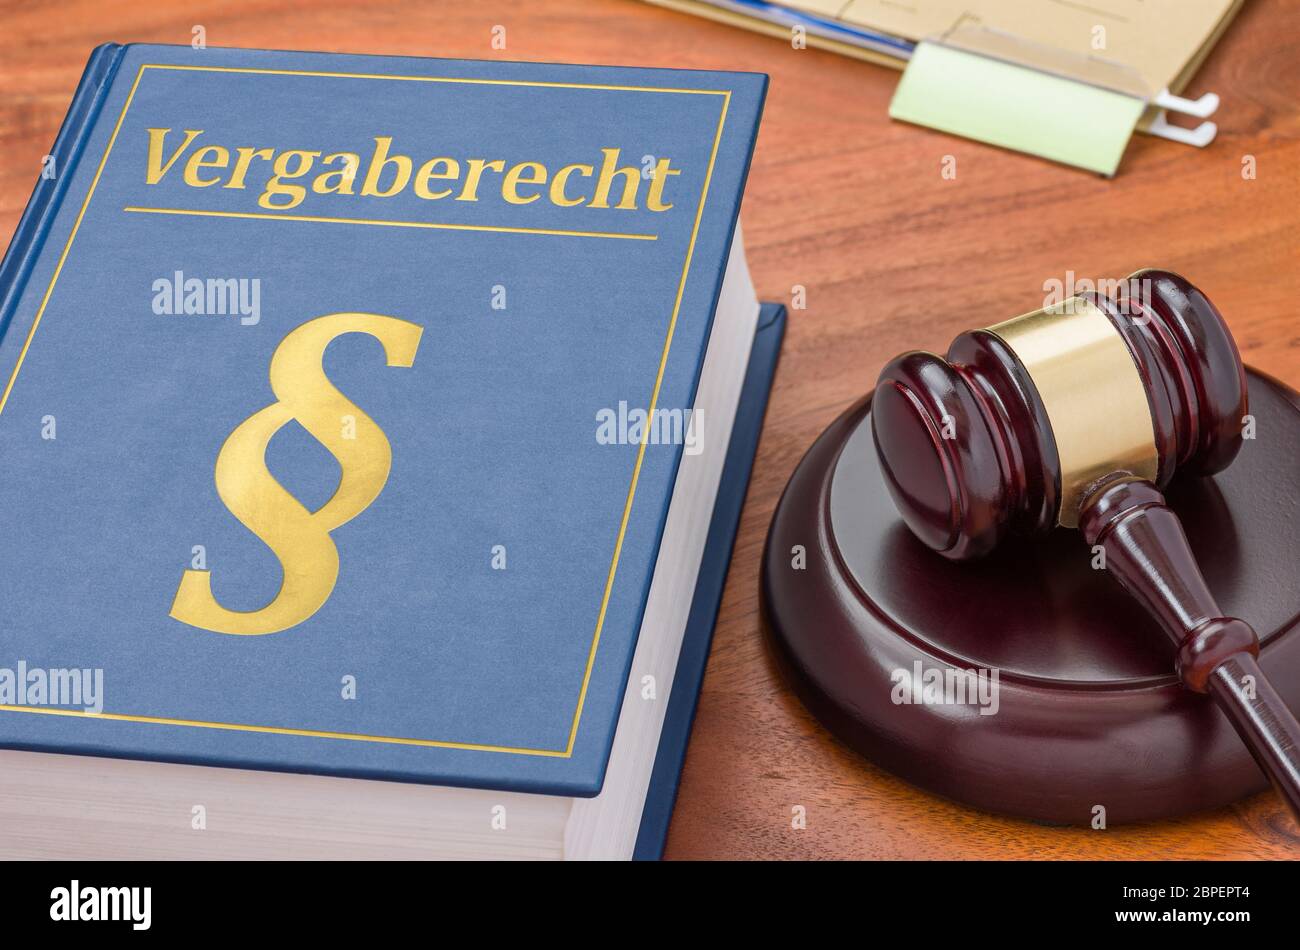 Gesetzbuch mit Richterhammer - Vergaberecht Stock Photo